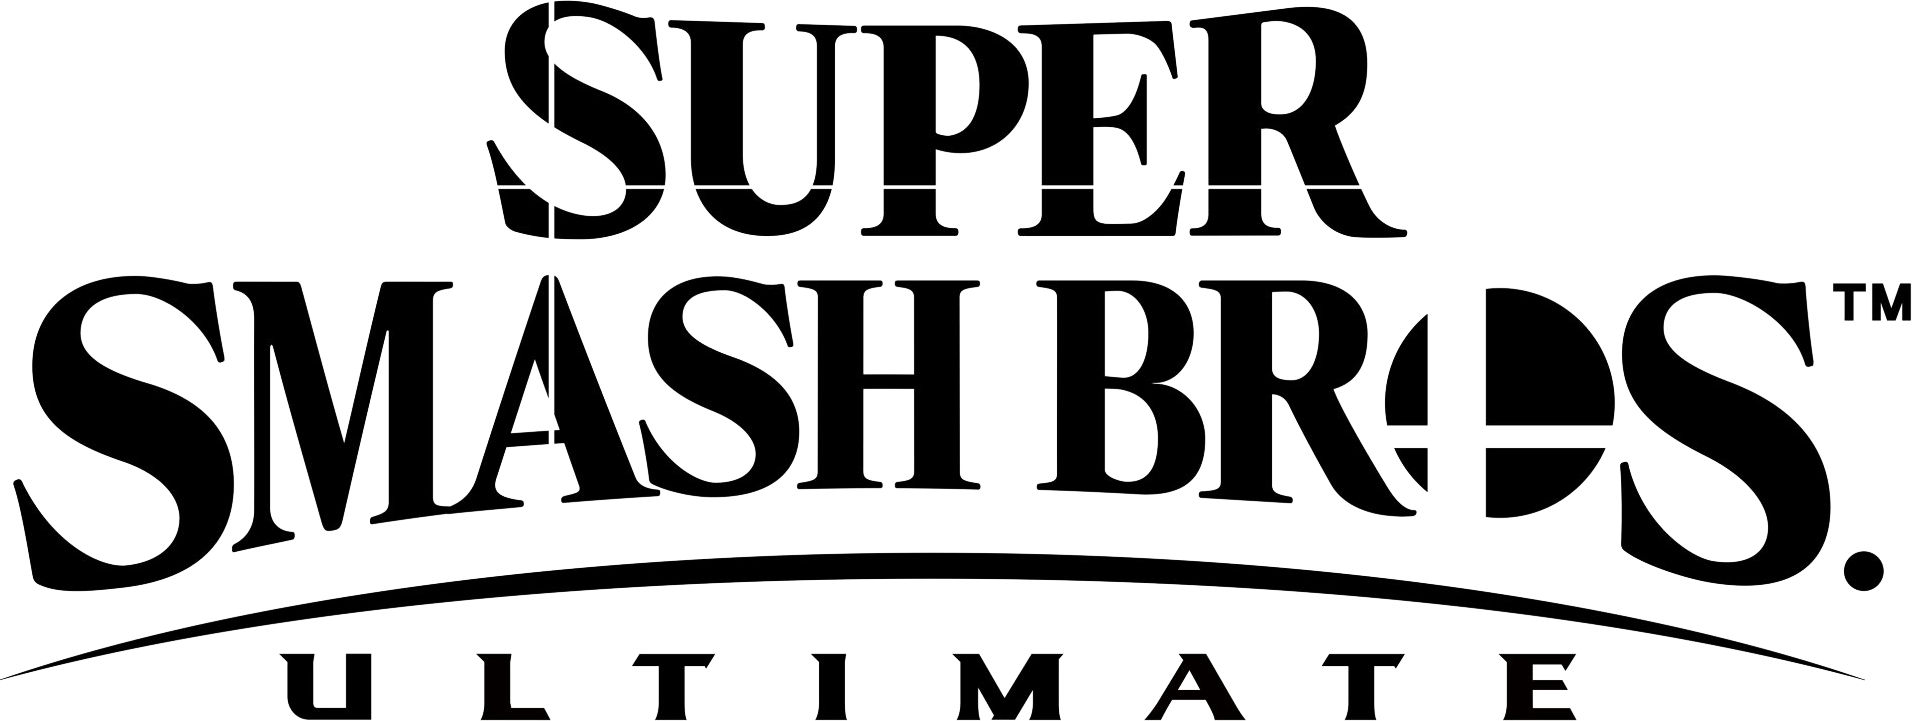 super smash bros ultimate font free download